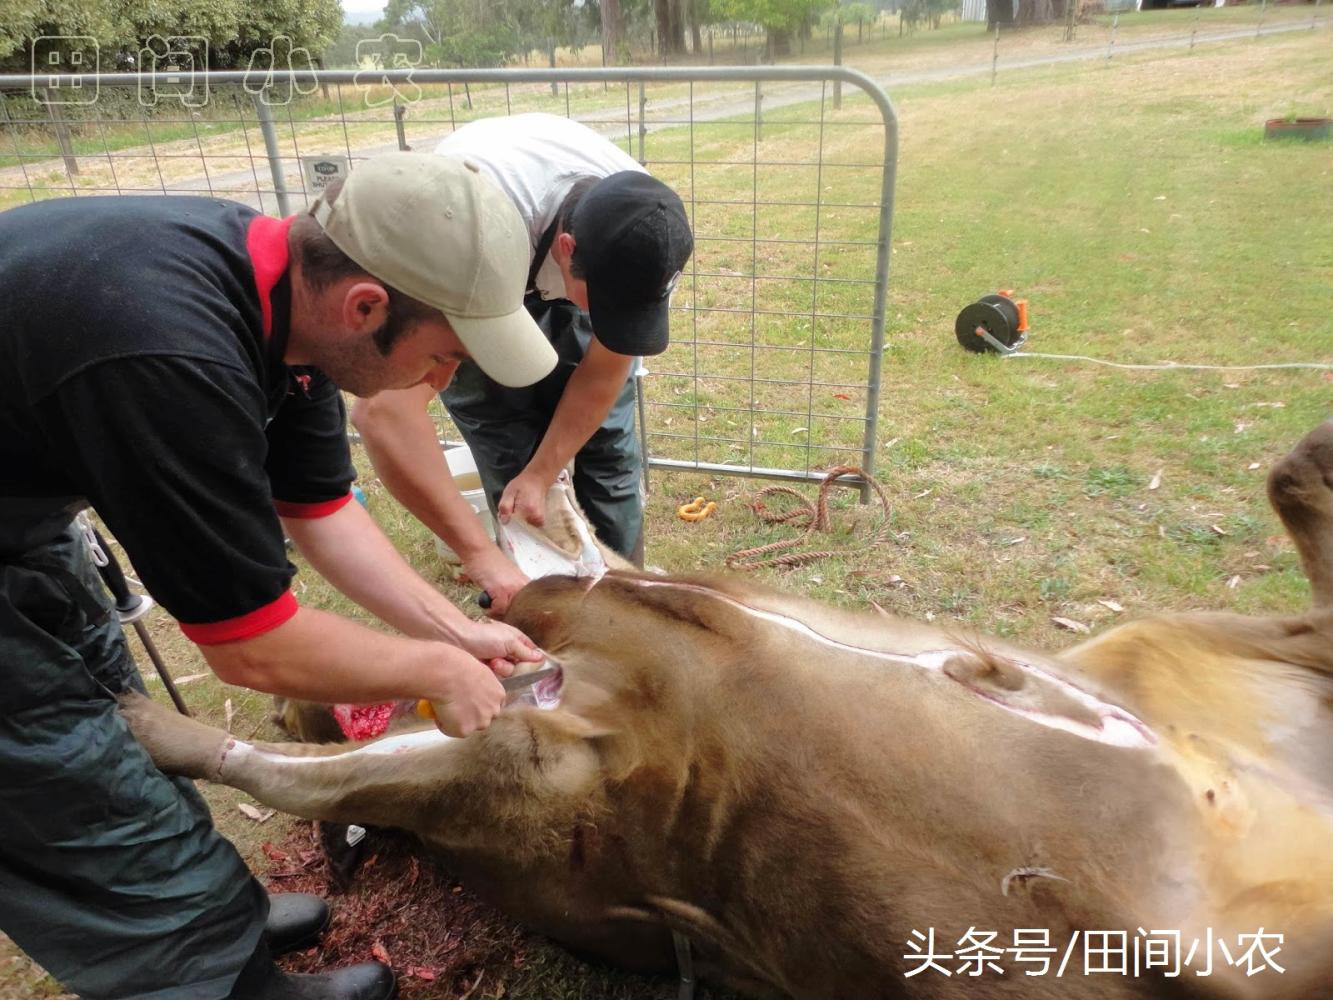 澳洲农民杀牛真奢侈: 丢掉两车牛肉和牛杂, 让咱情何以堪?